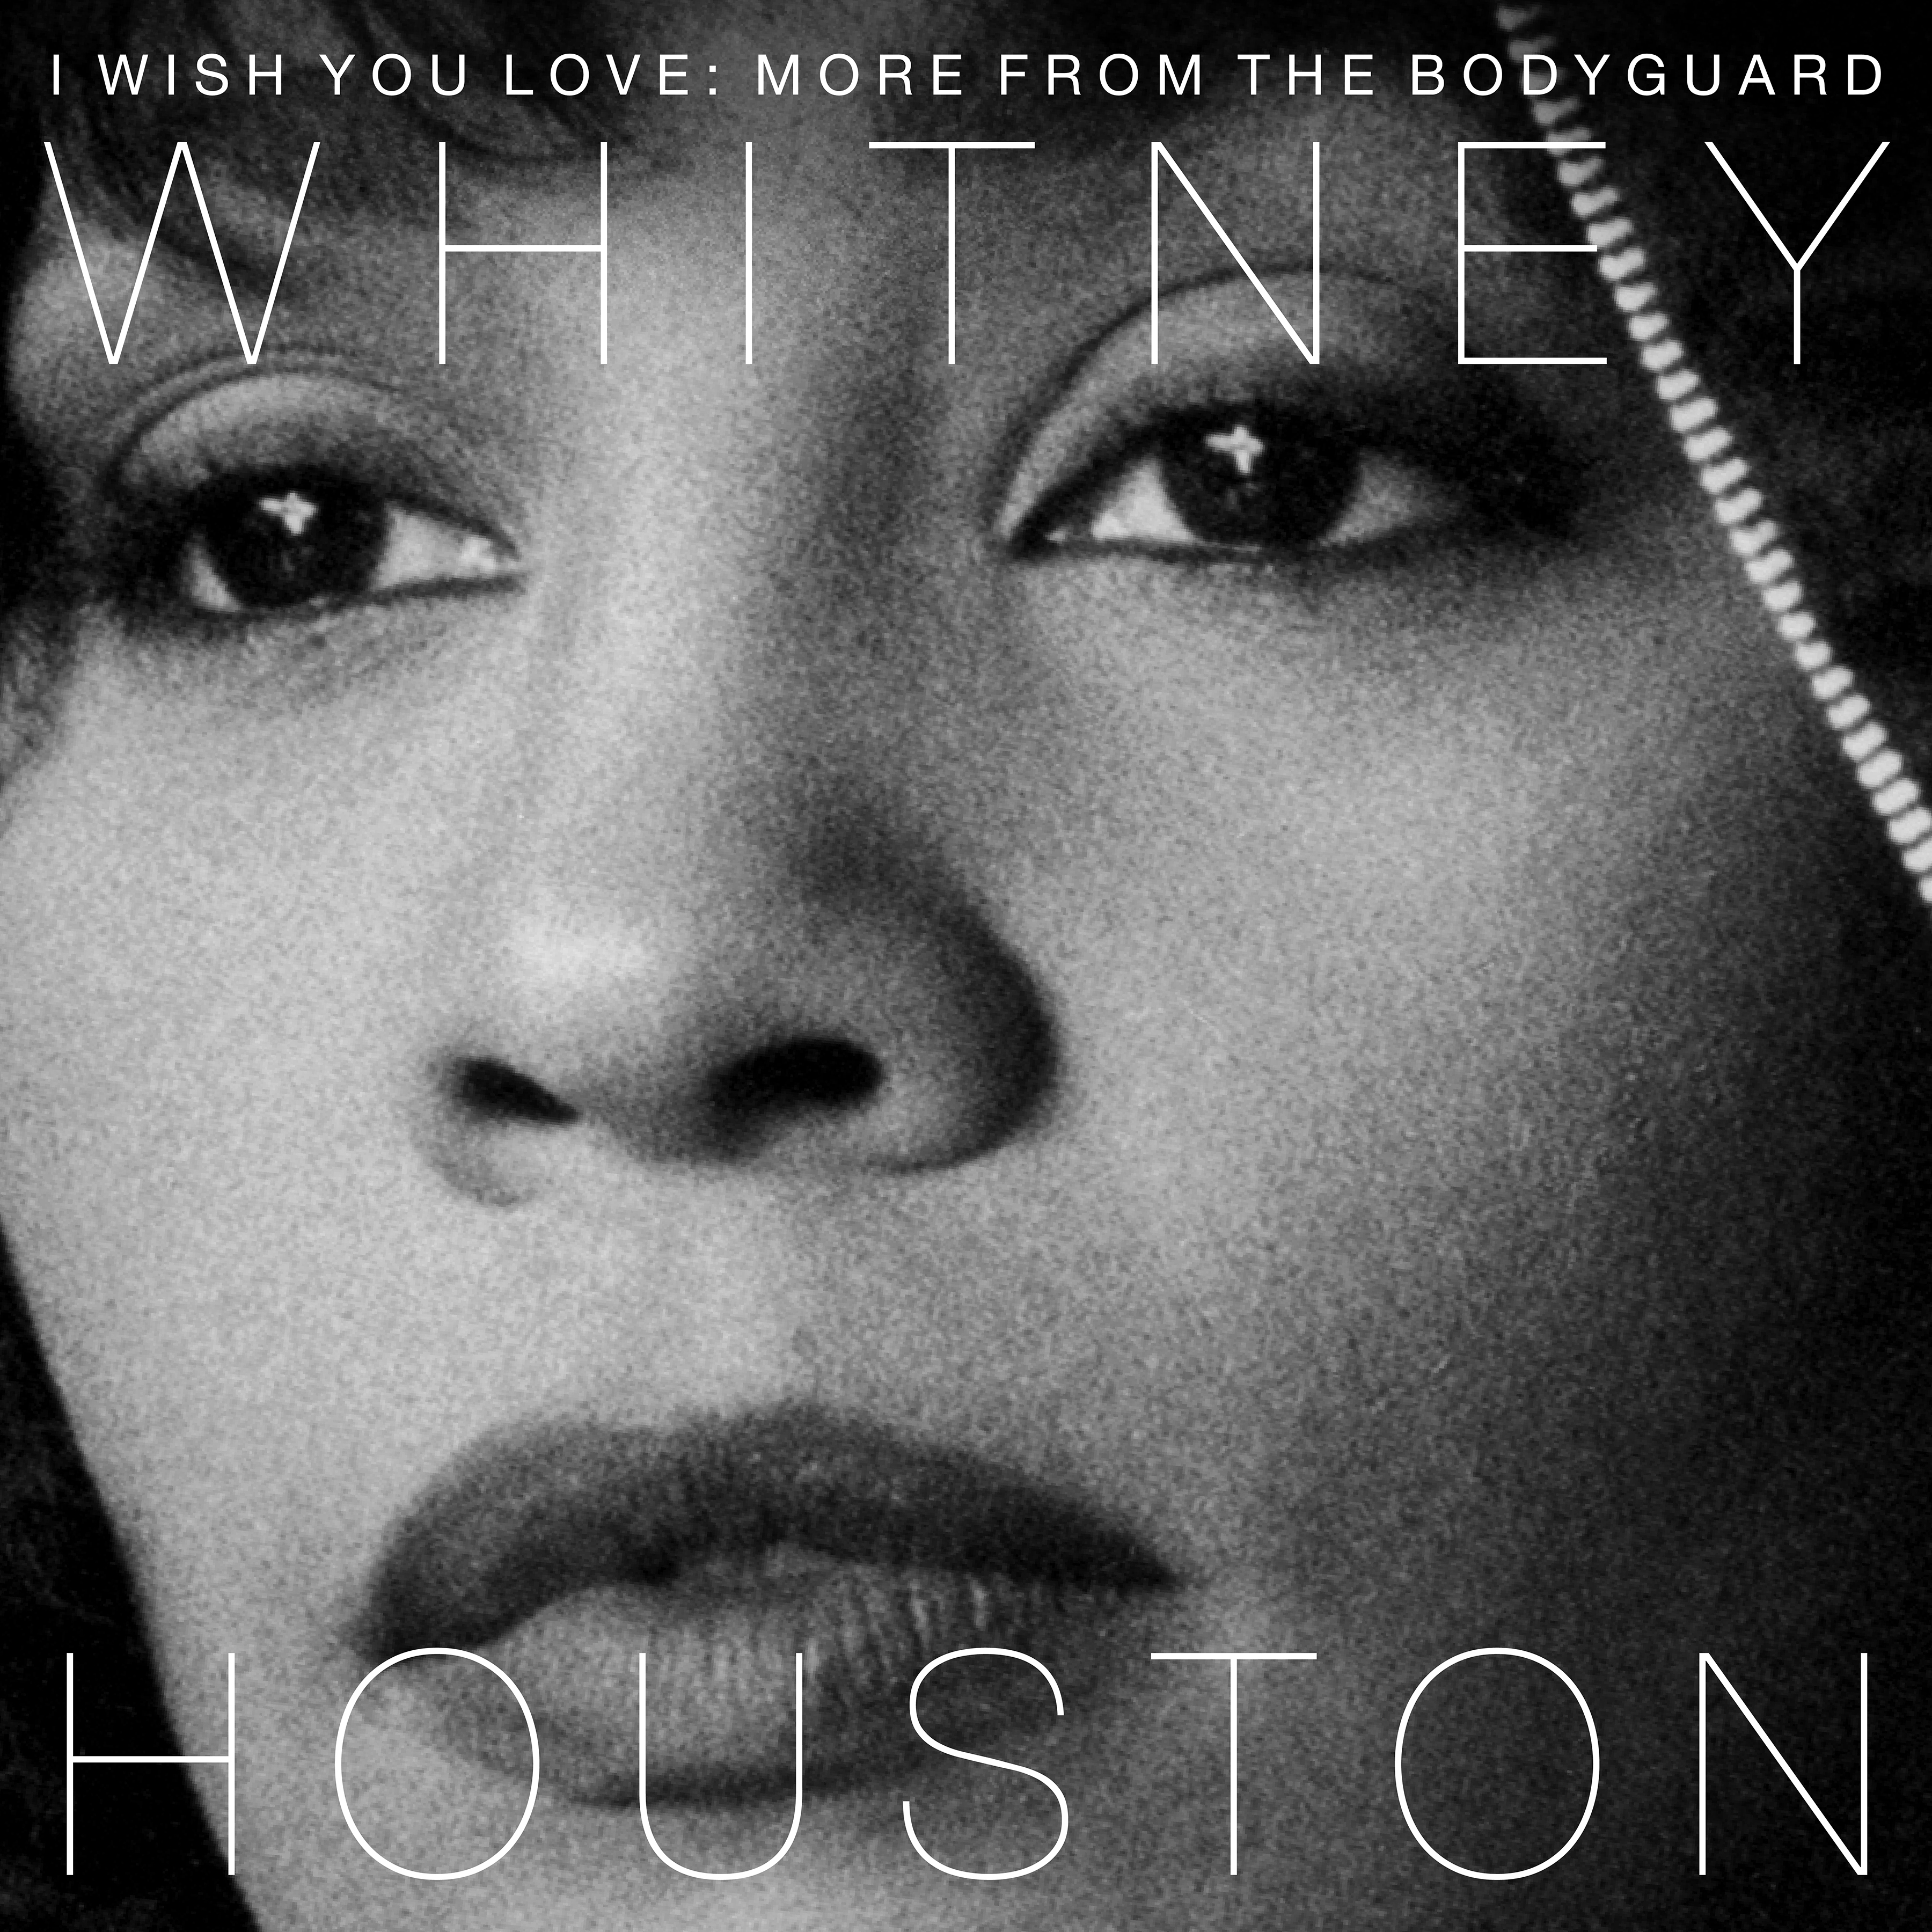 “El Guardaespaldas” celebra 25 años con el lanzamiento de la banda sonora de Whitney Houston acompañada de material inédito